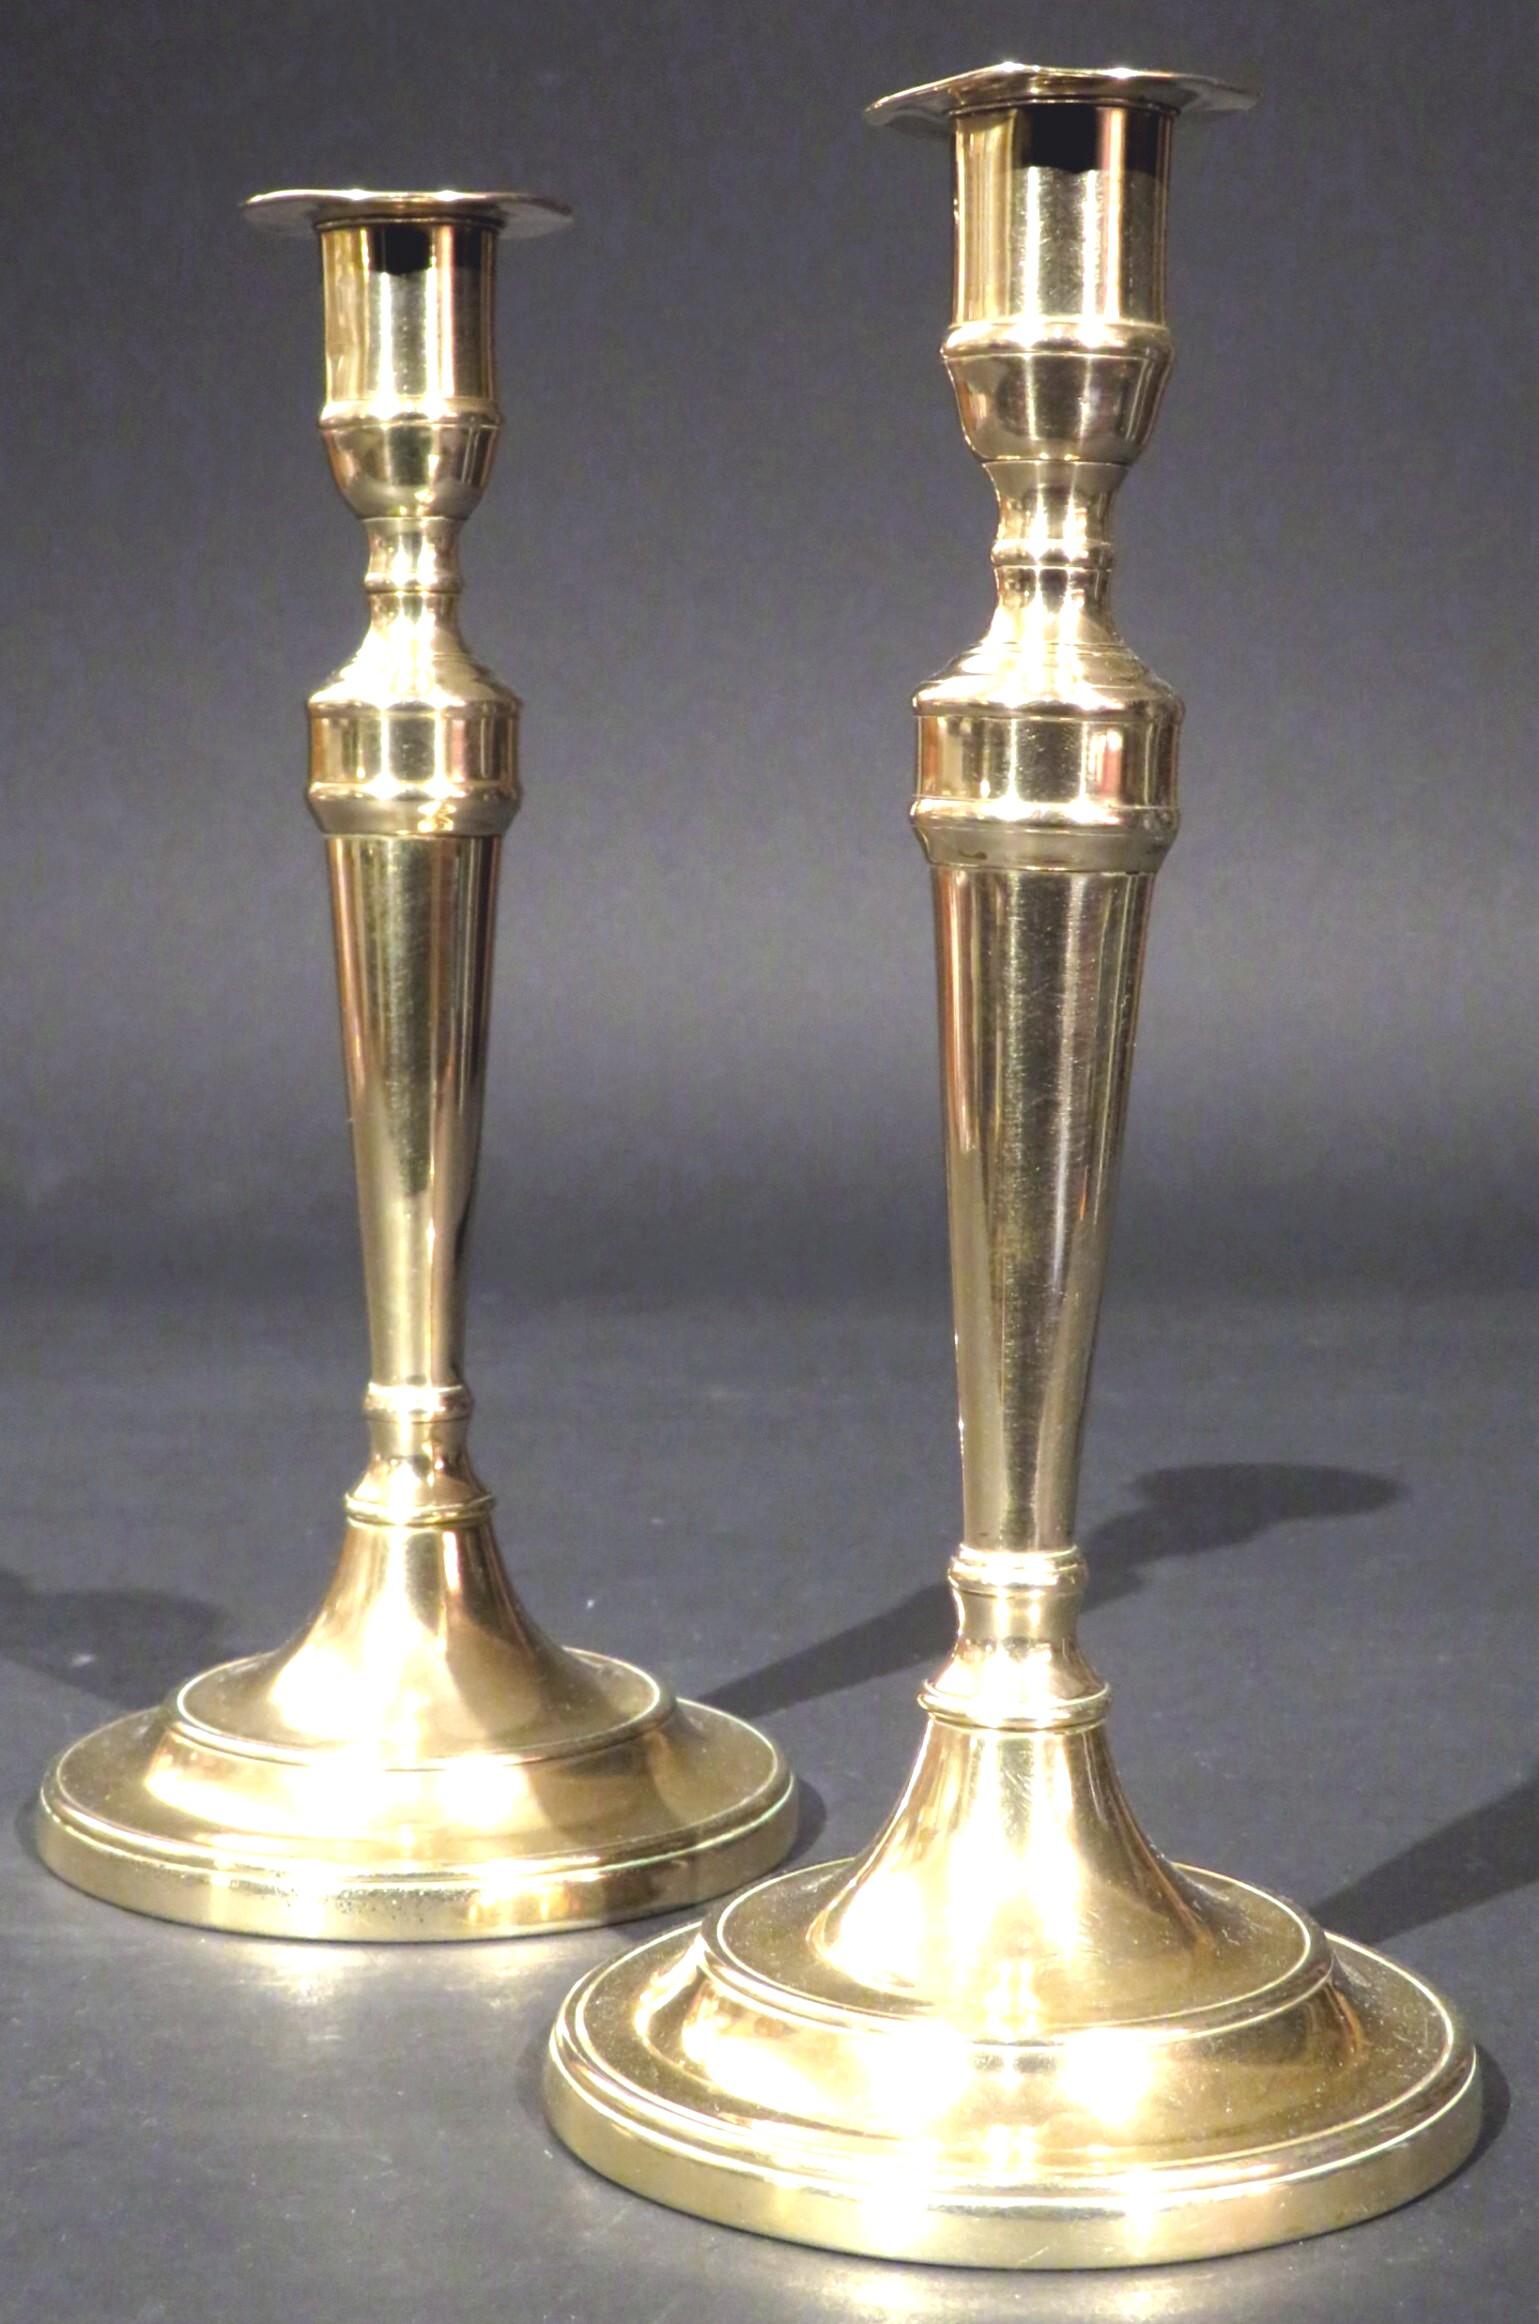 Ein sehr hübsches und seltenes Paar Glockenmetall-Leuchter aus dem 18. Jahrhundert, beide mit aufgeweiteten, gesäumten Säulen mit zylindrischen Tüllen und abgeflachten Tropfschalen, die sich auf abgestuften runden Sockeln erheben, die ihre